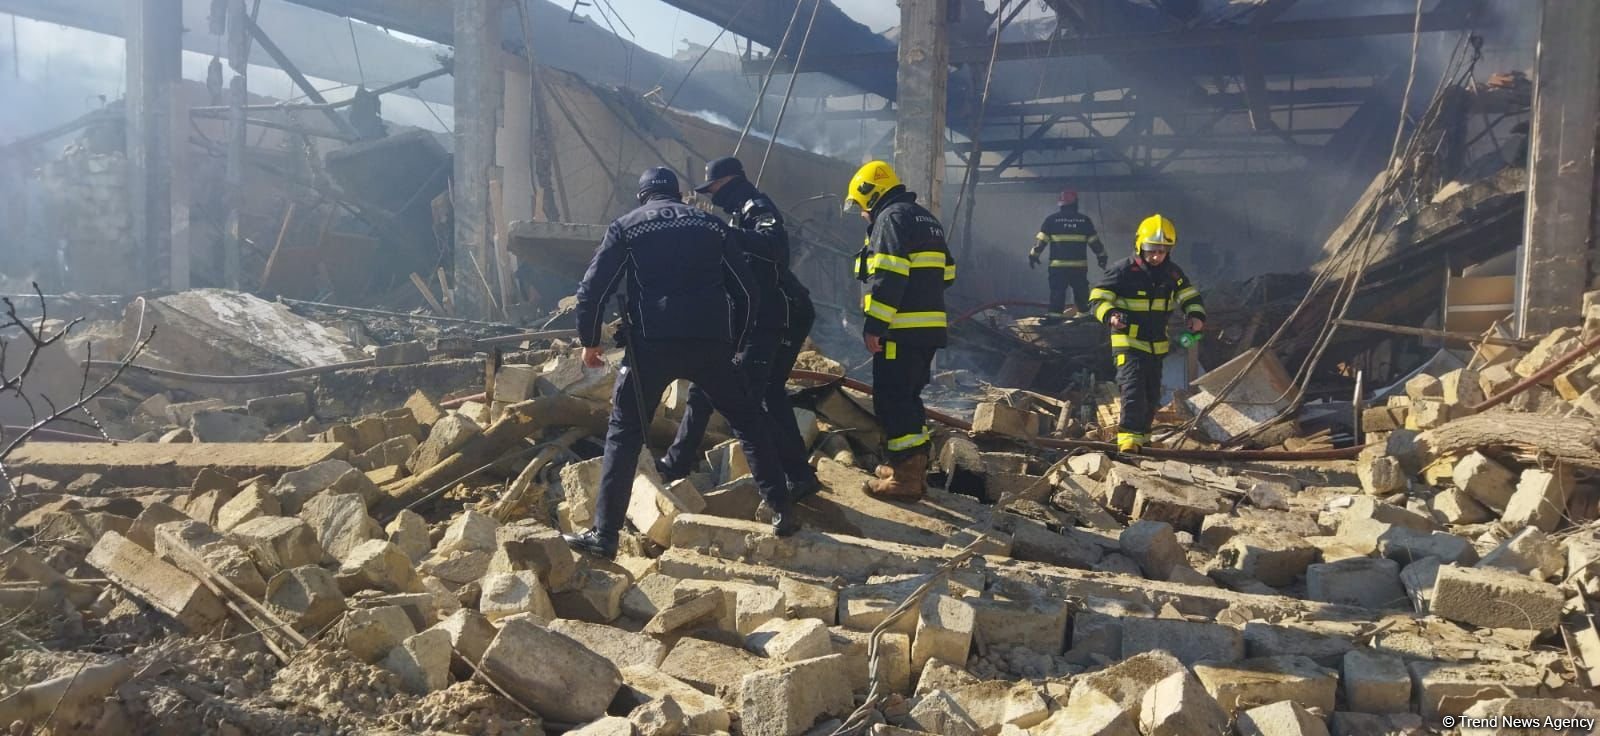 Поисково-спасательные работы на месте взрыва в Баку завершены